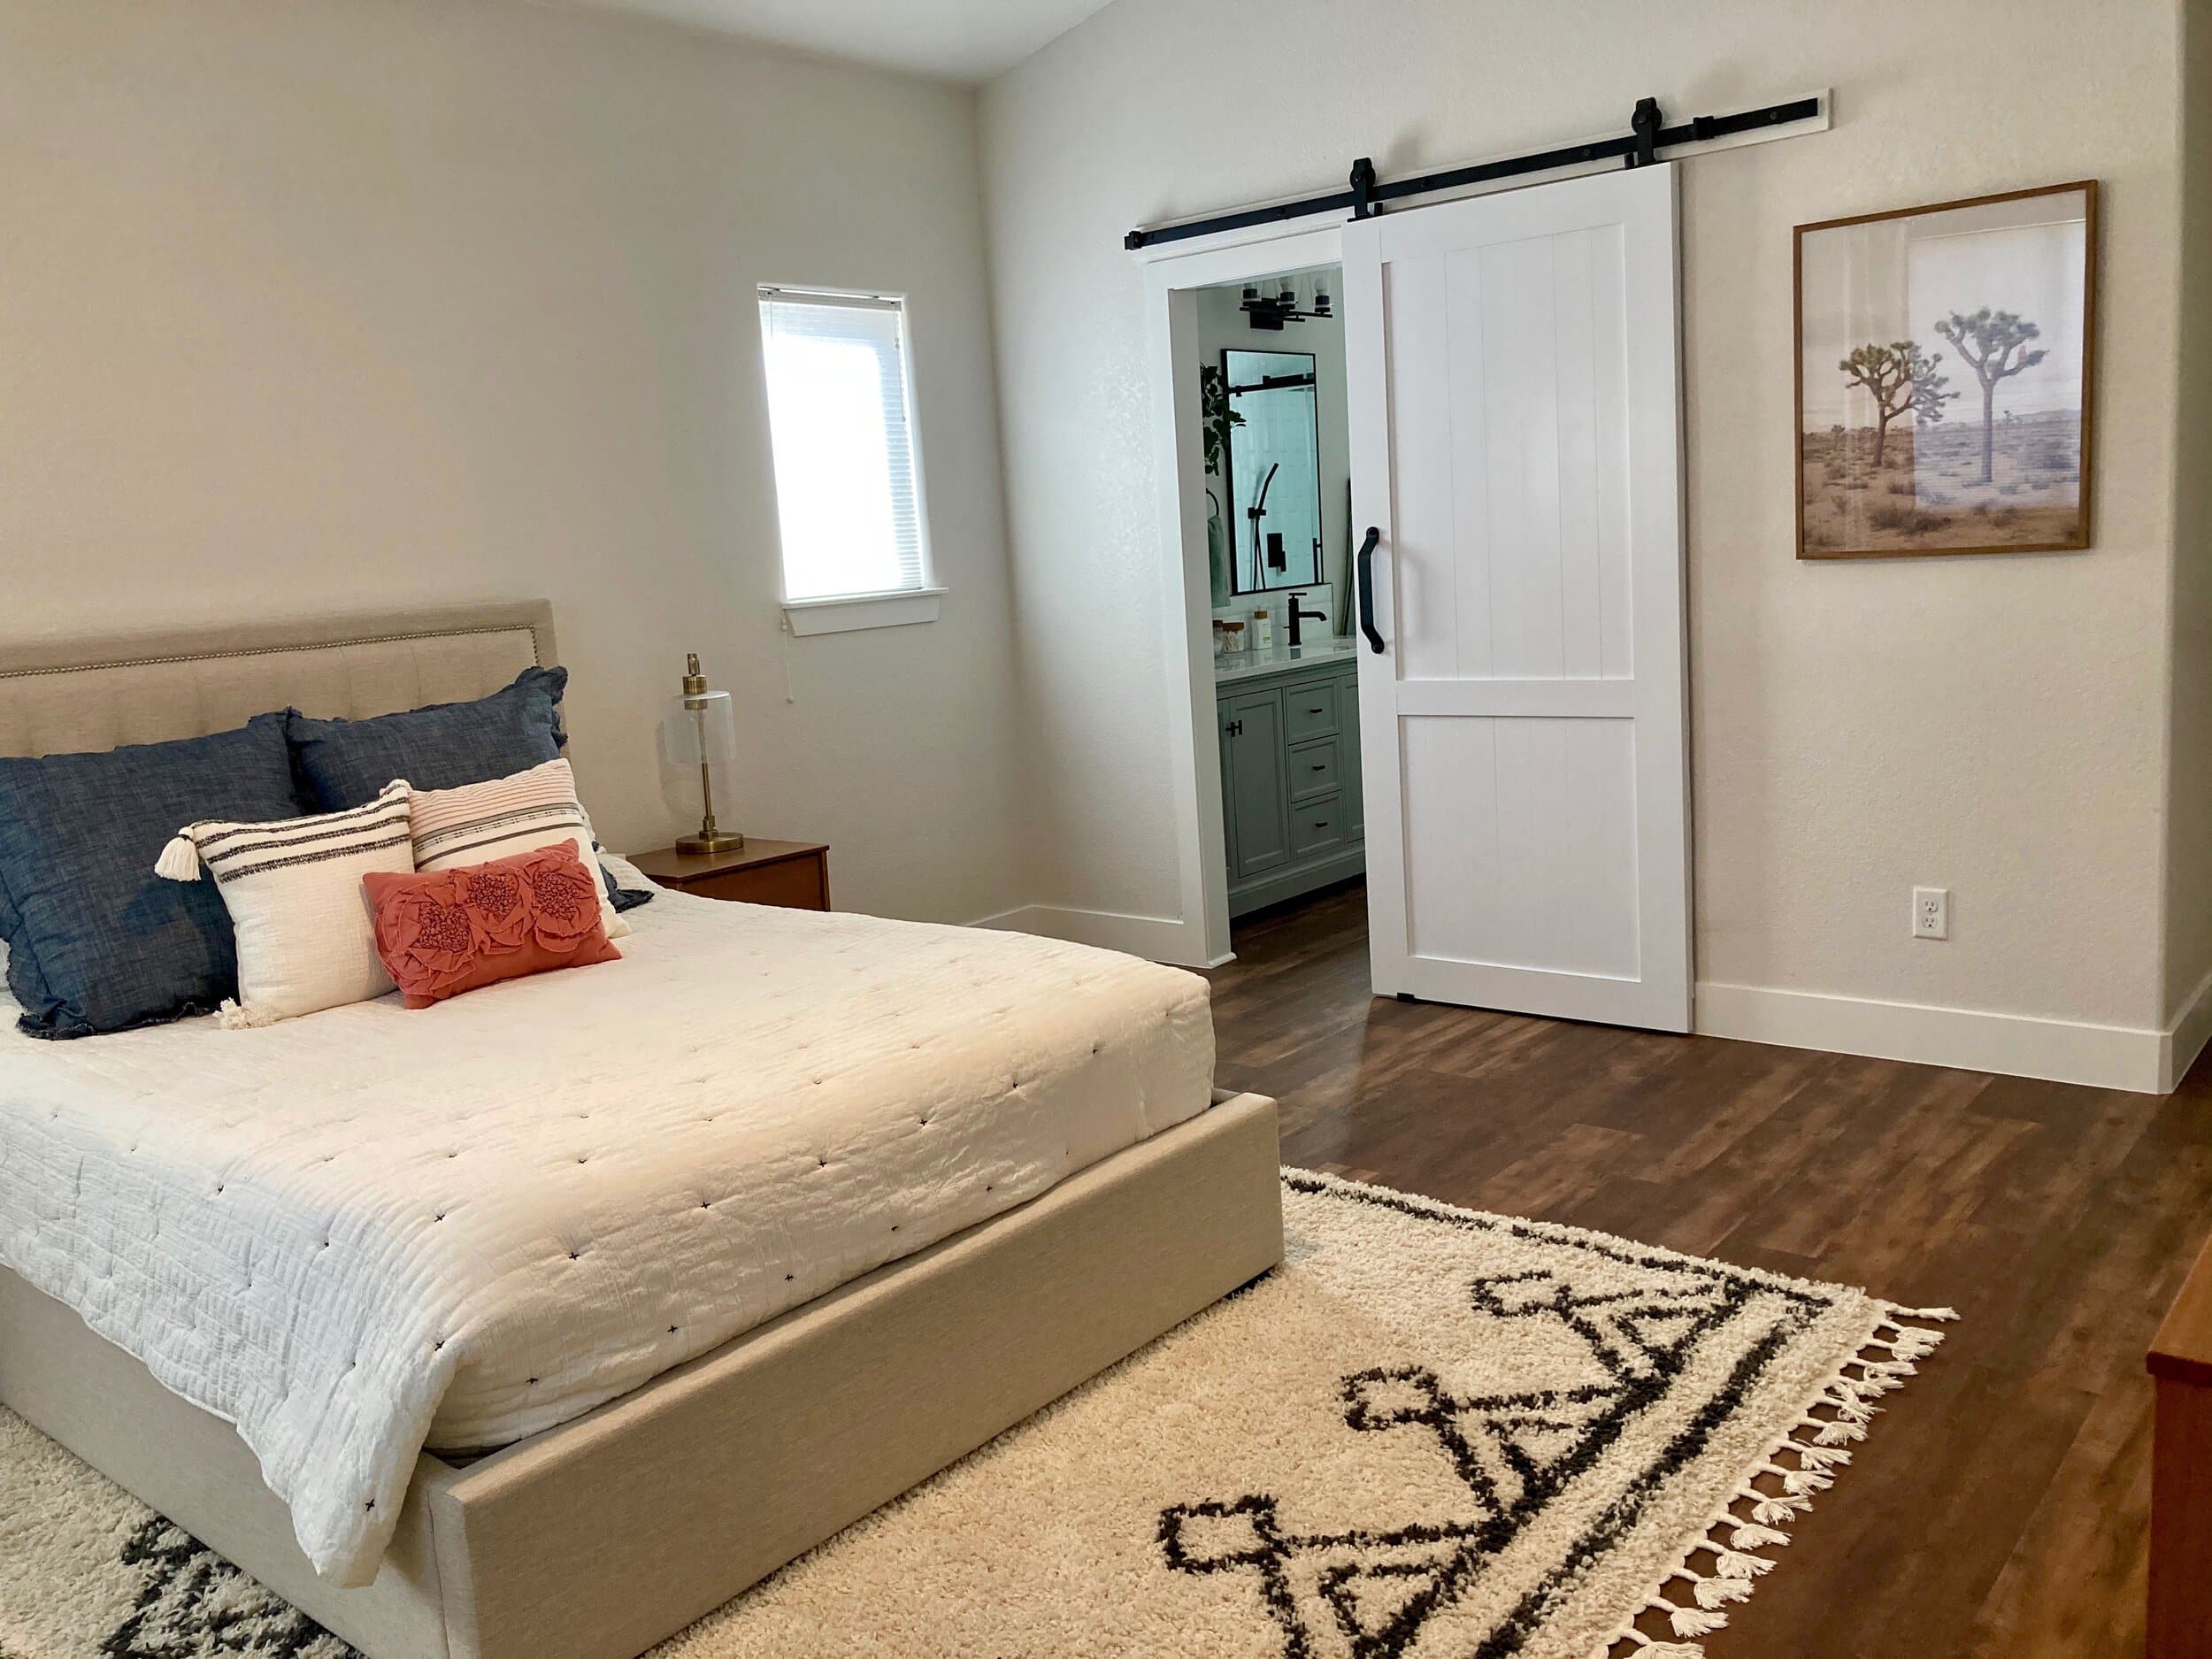 Owner's suite bedroom with sliding barn door to ensuite bathroom